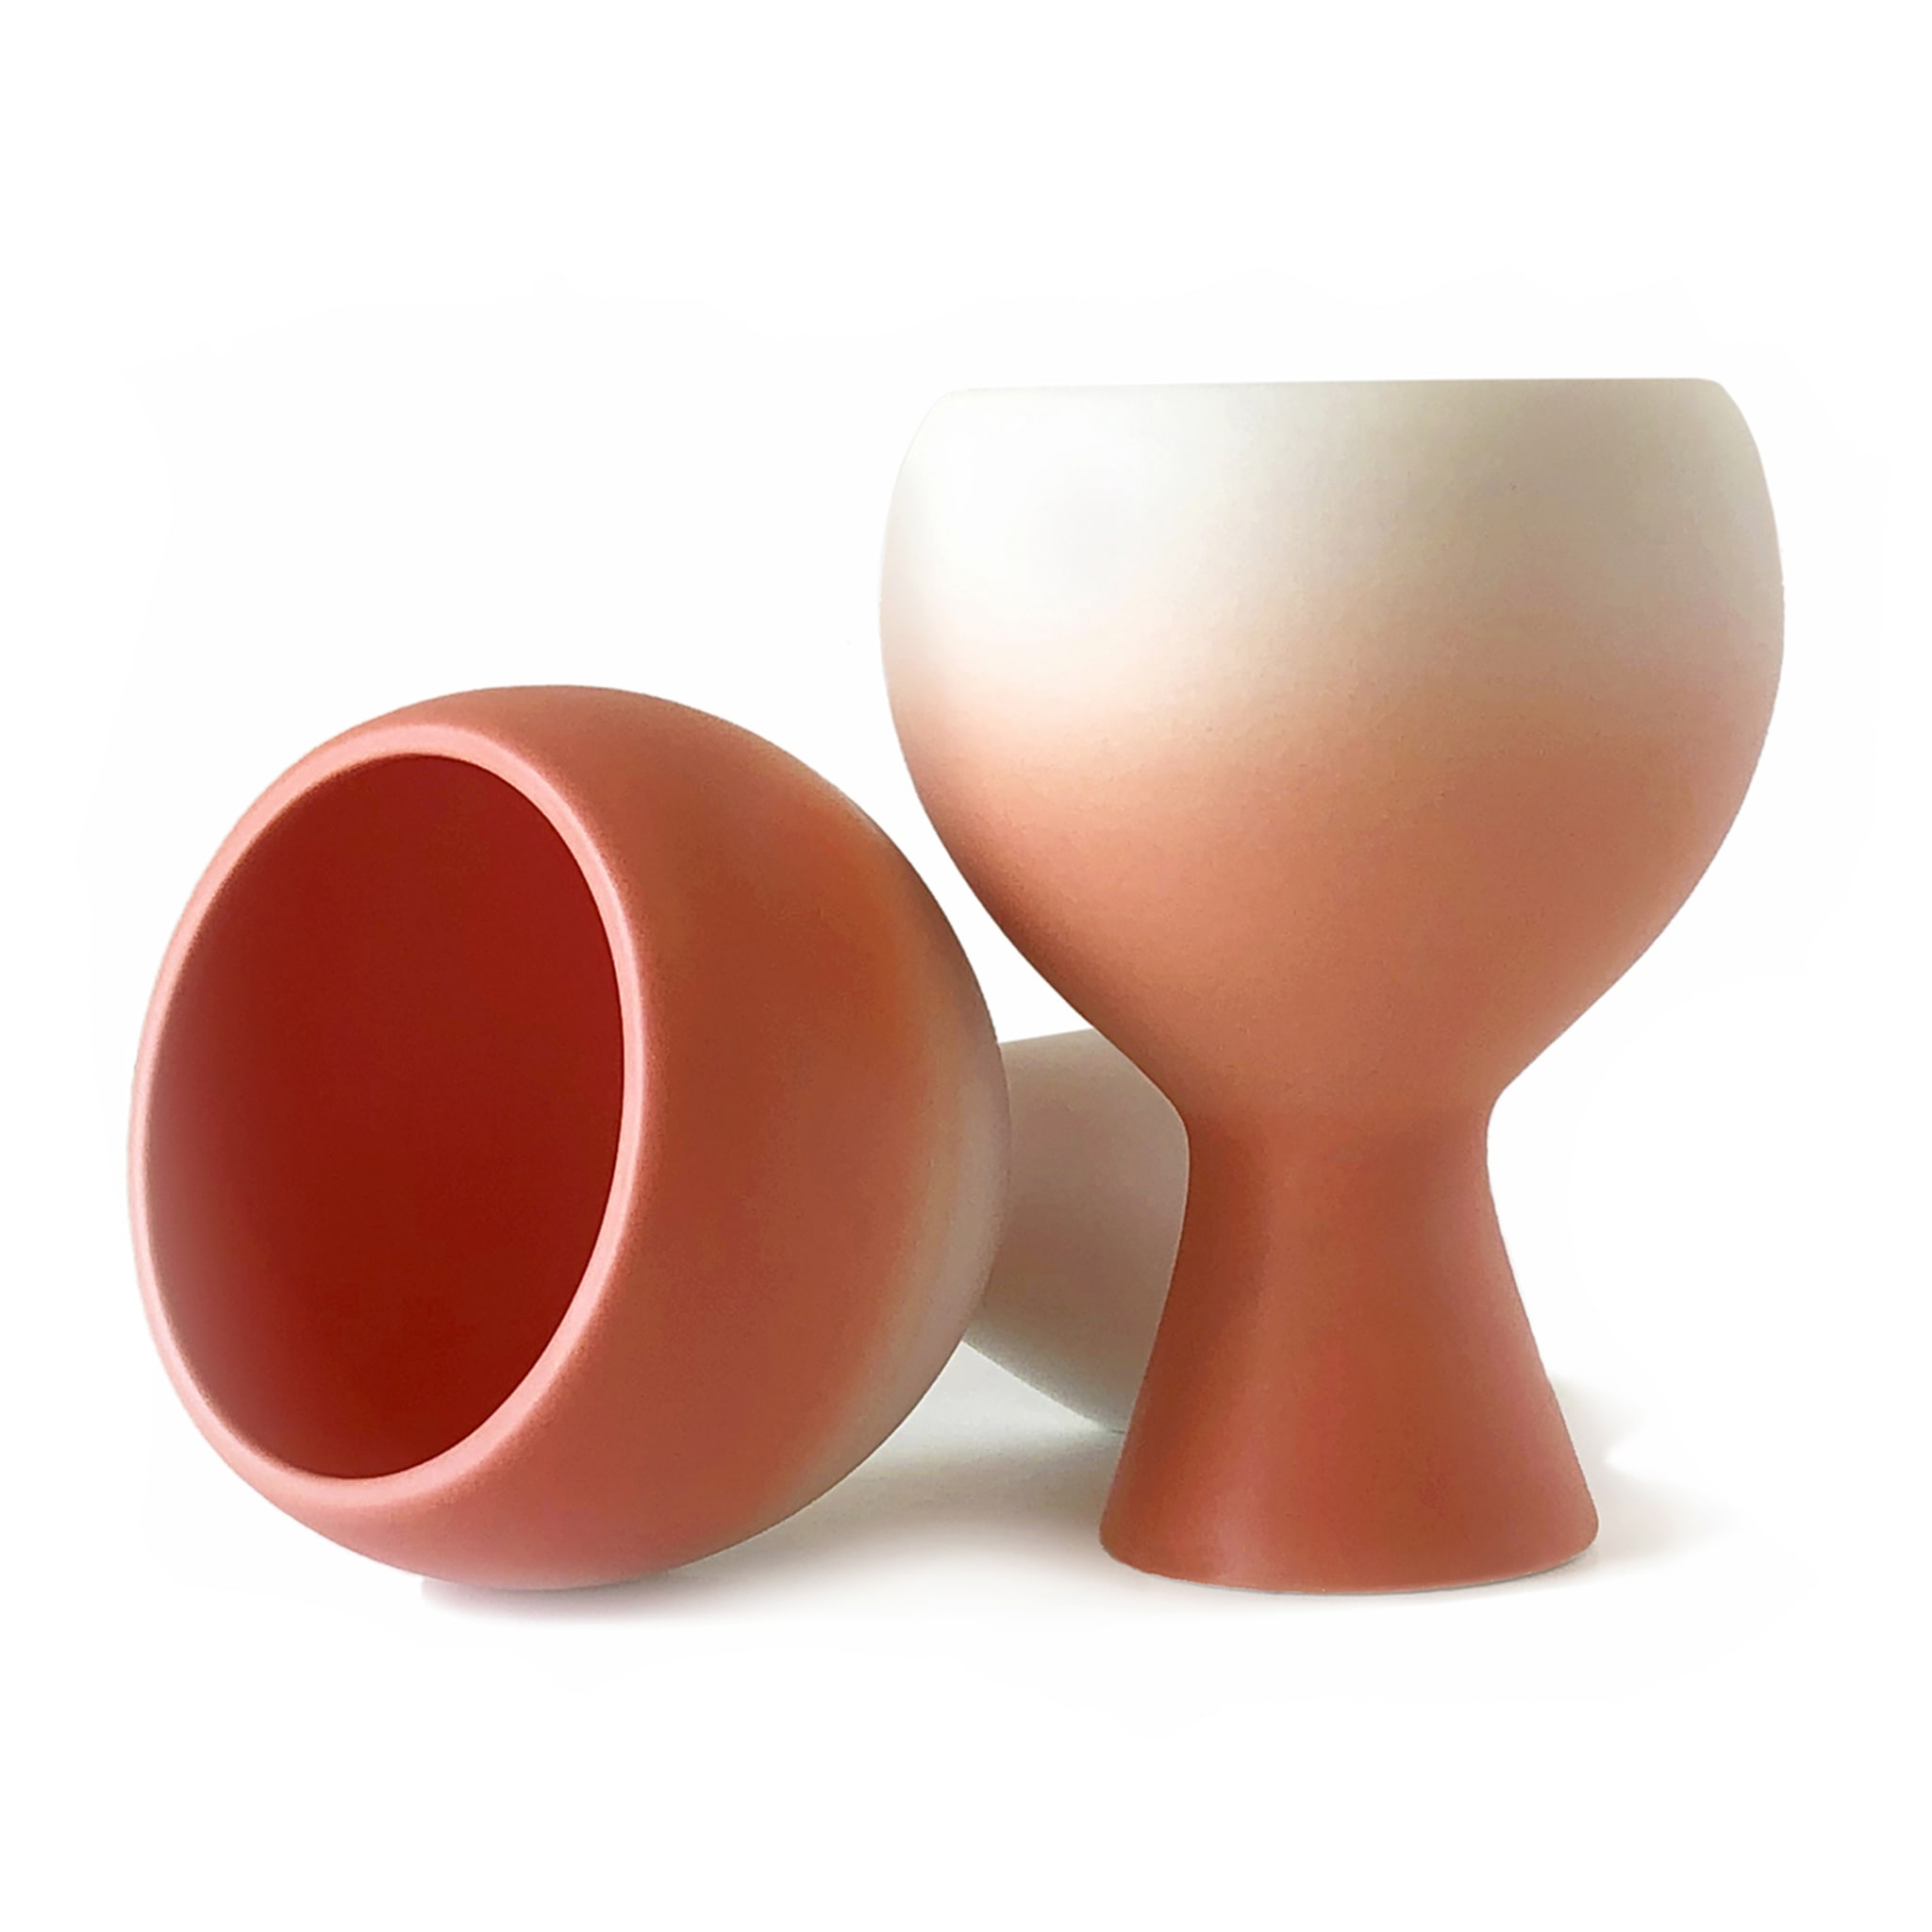 Inseparabili Peach Pink Set of 2 Cups - Alternative view 2